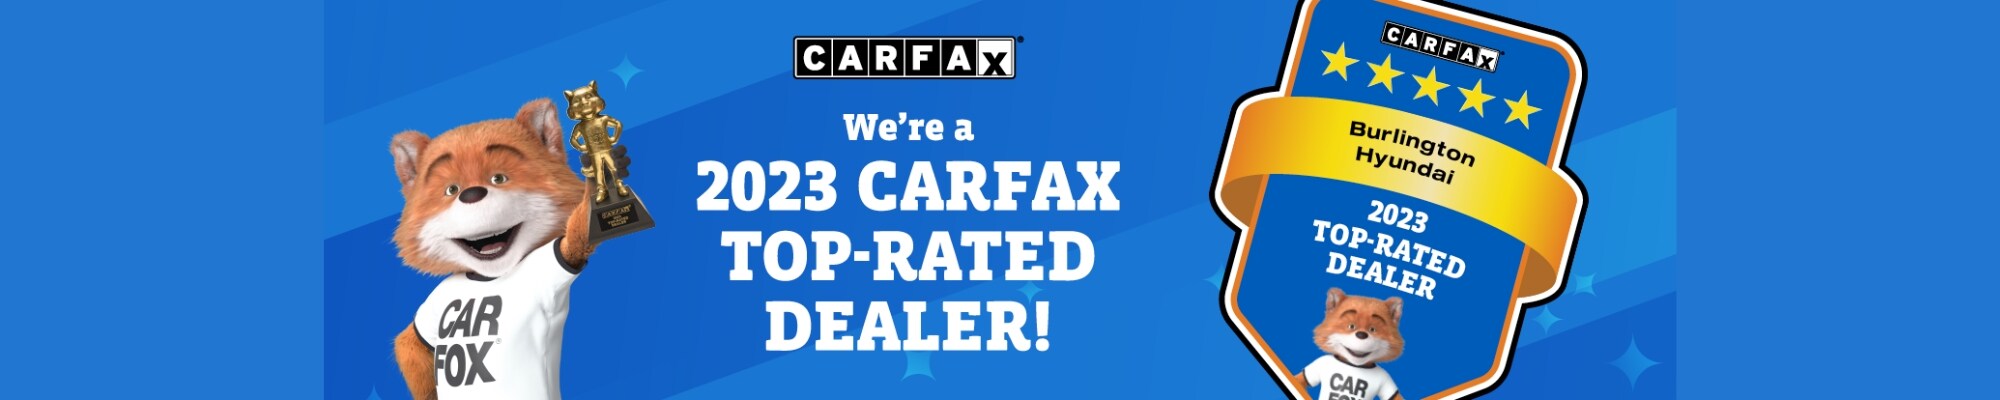 Burlington Hyundai CarFax Top-Rated Dealer